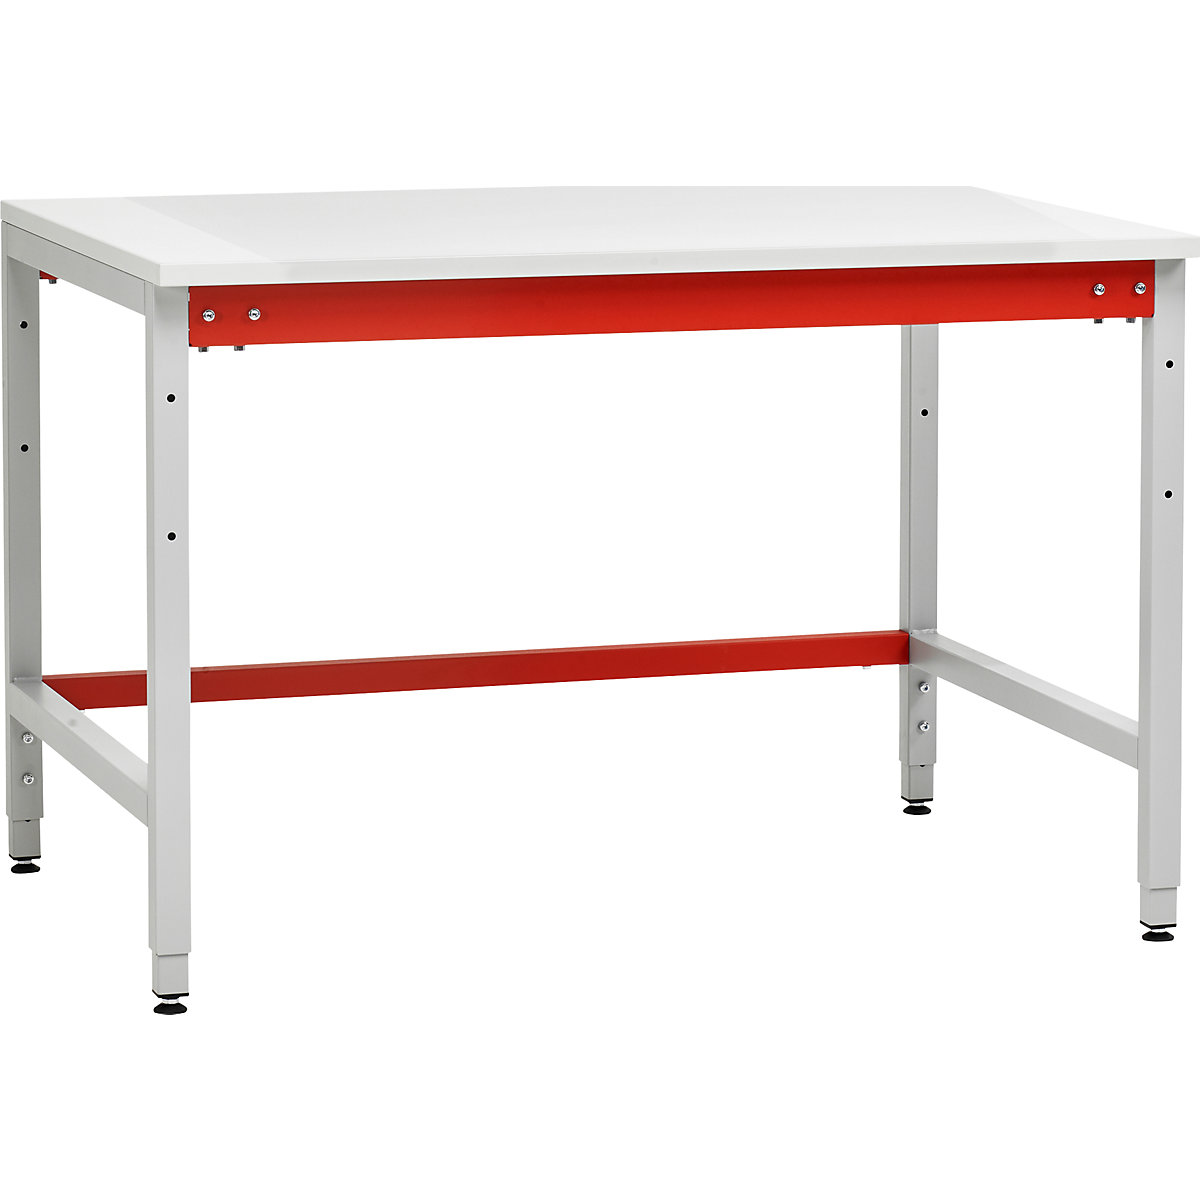 Stół do pakowania, wersja standardowa, wys. x szer. x głęb. 780 x 1200 x 900 mm-6